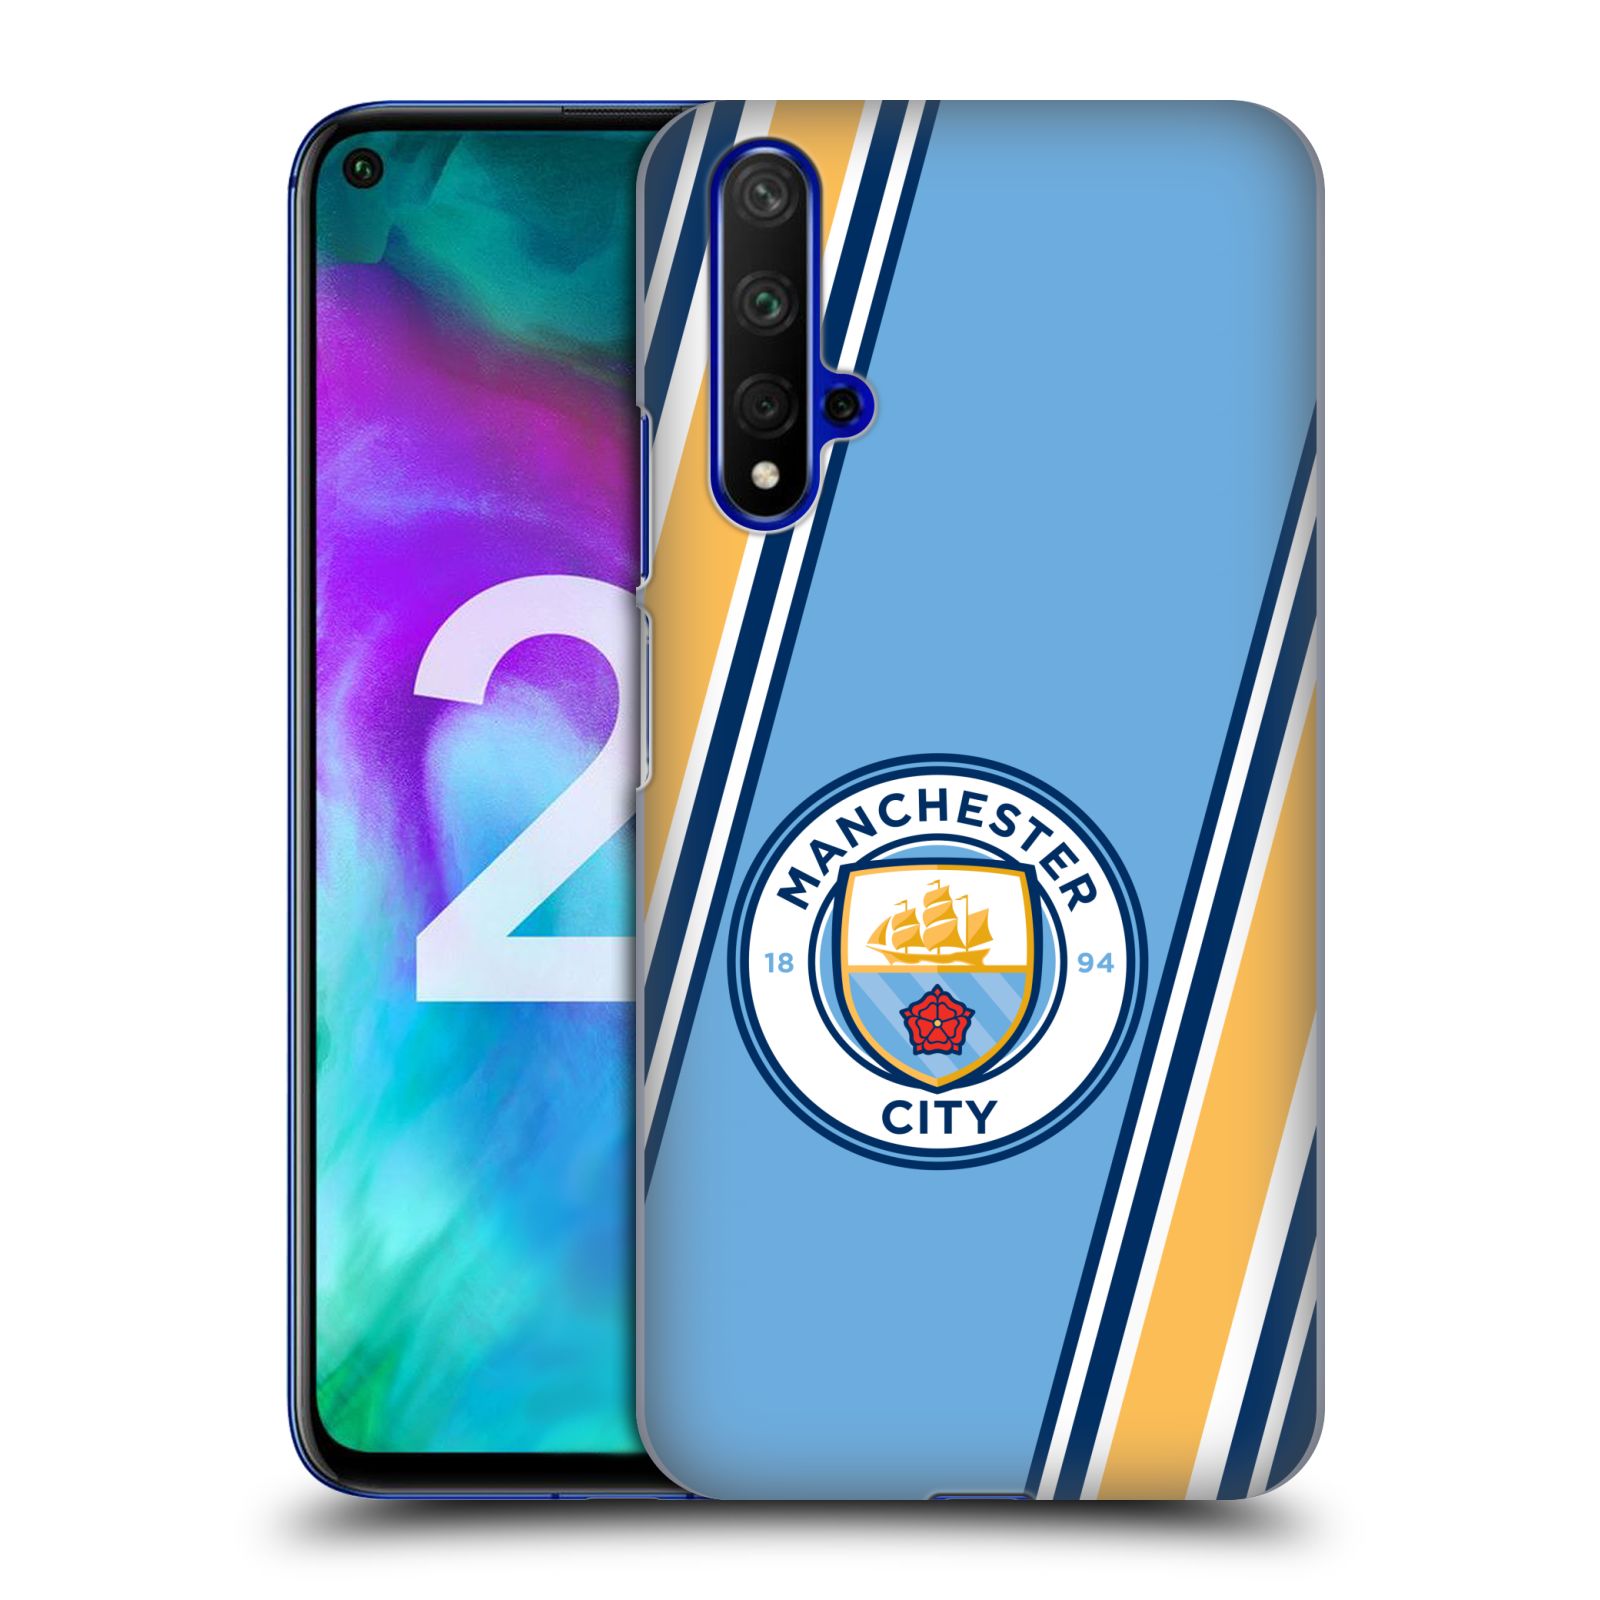 Pouzdro na mobil Honor 20 - HEAD CASE - Fotbalový klub Manchester City modrá barva žluté pruhy